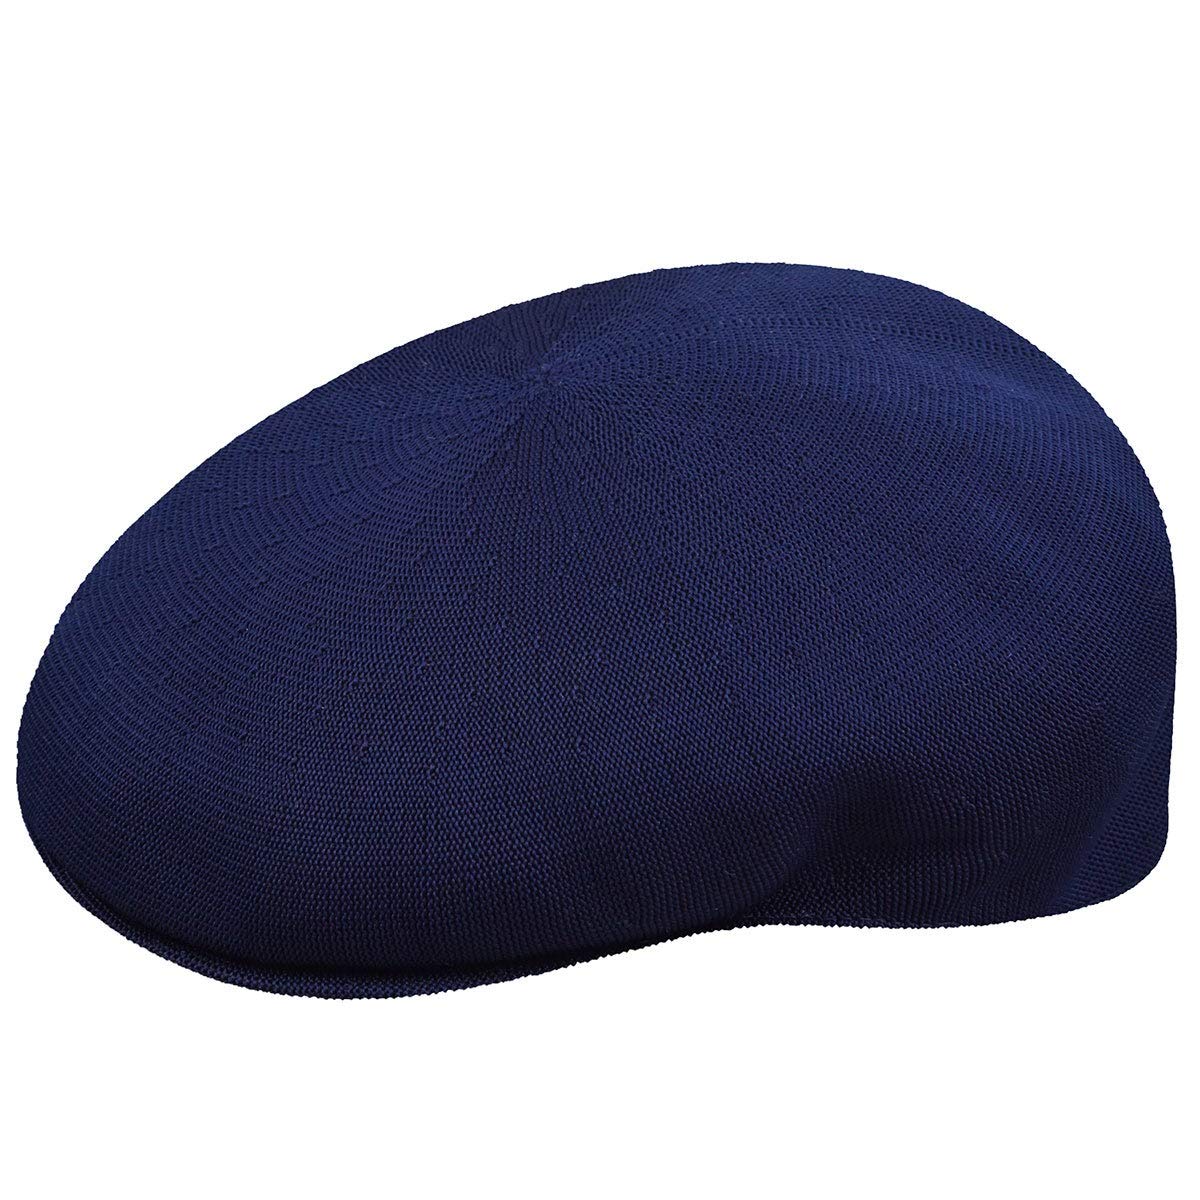 Kangol Headwear Herren Schirmmütze Tropic 504, Gr. Small (Herstellergröße:Small), Blau (Navy)